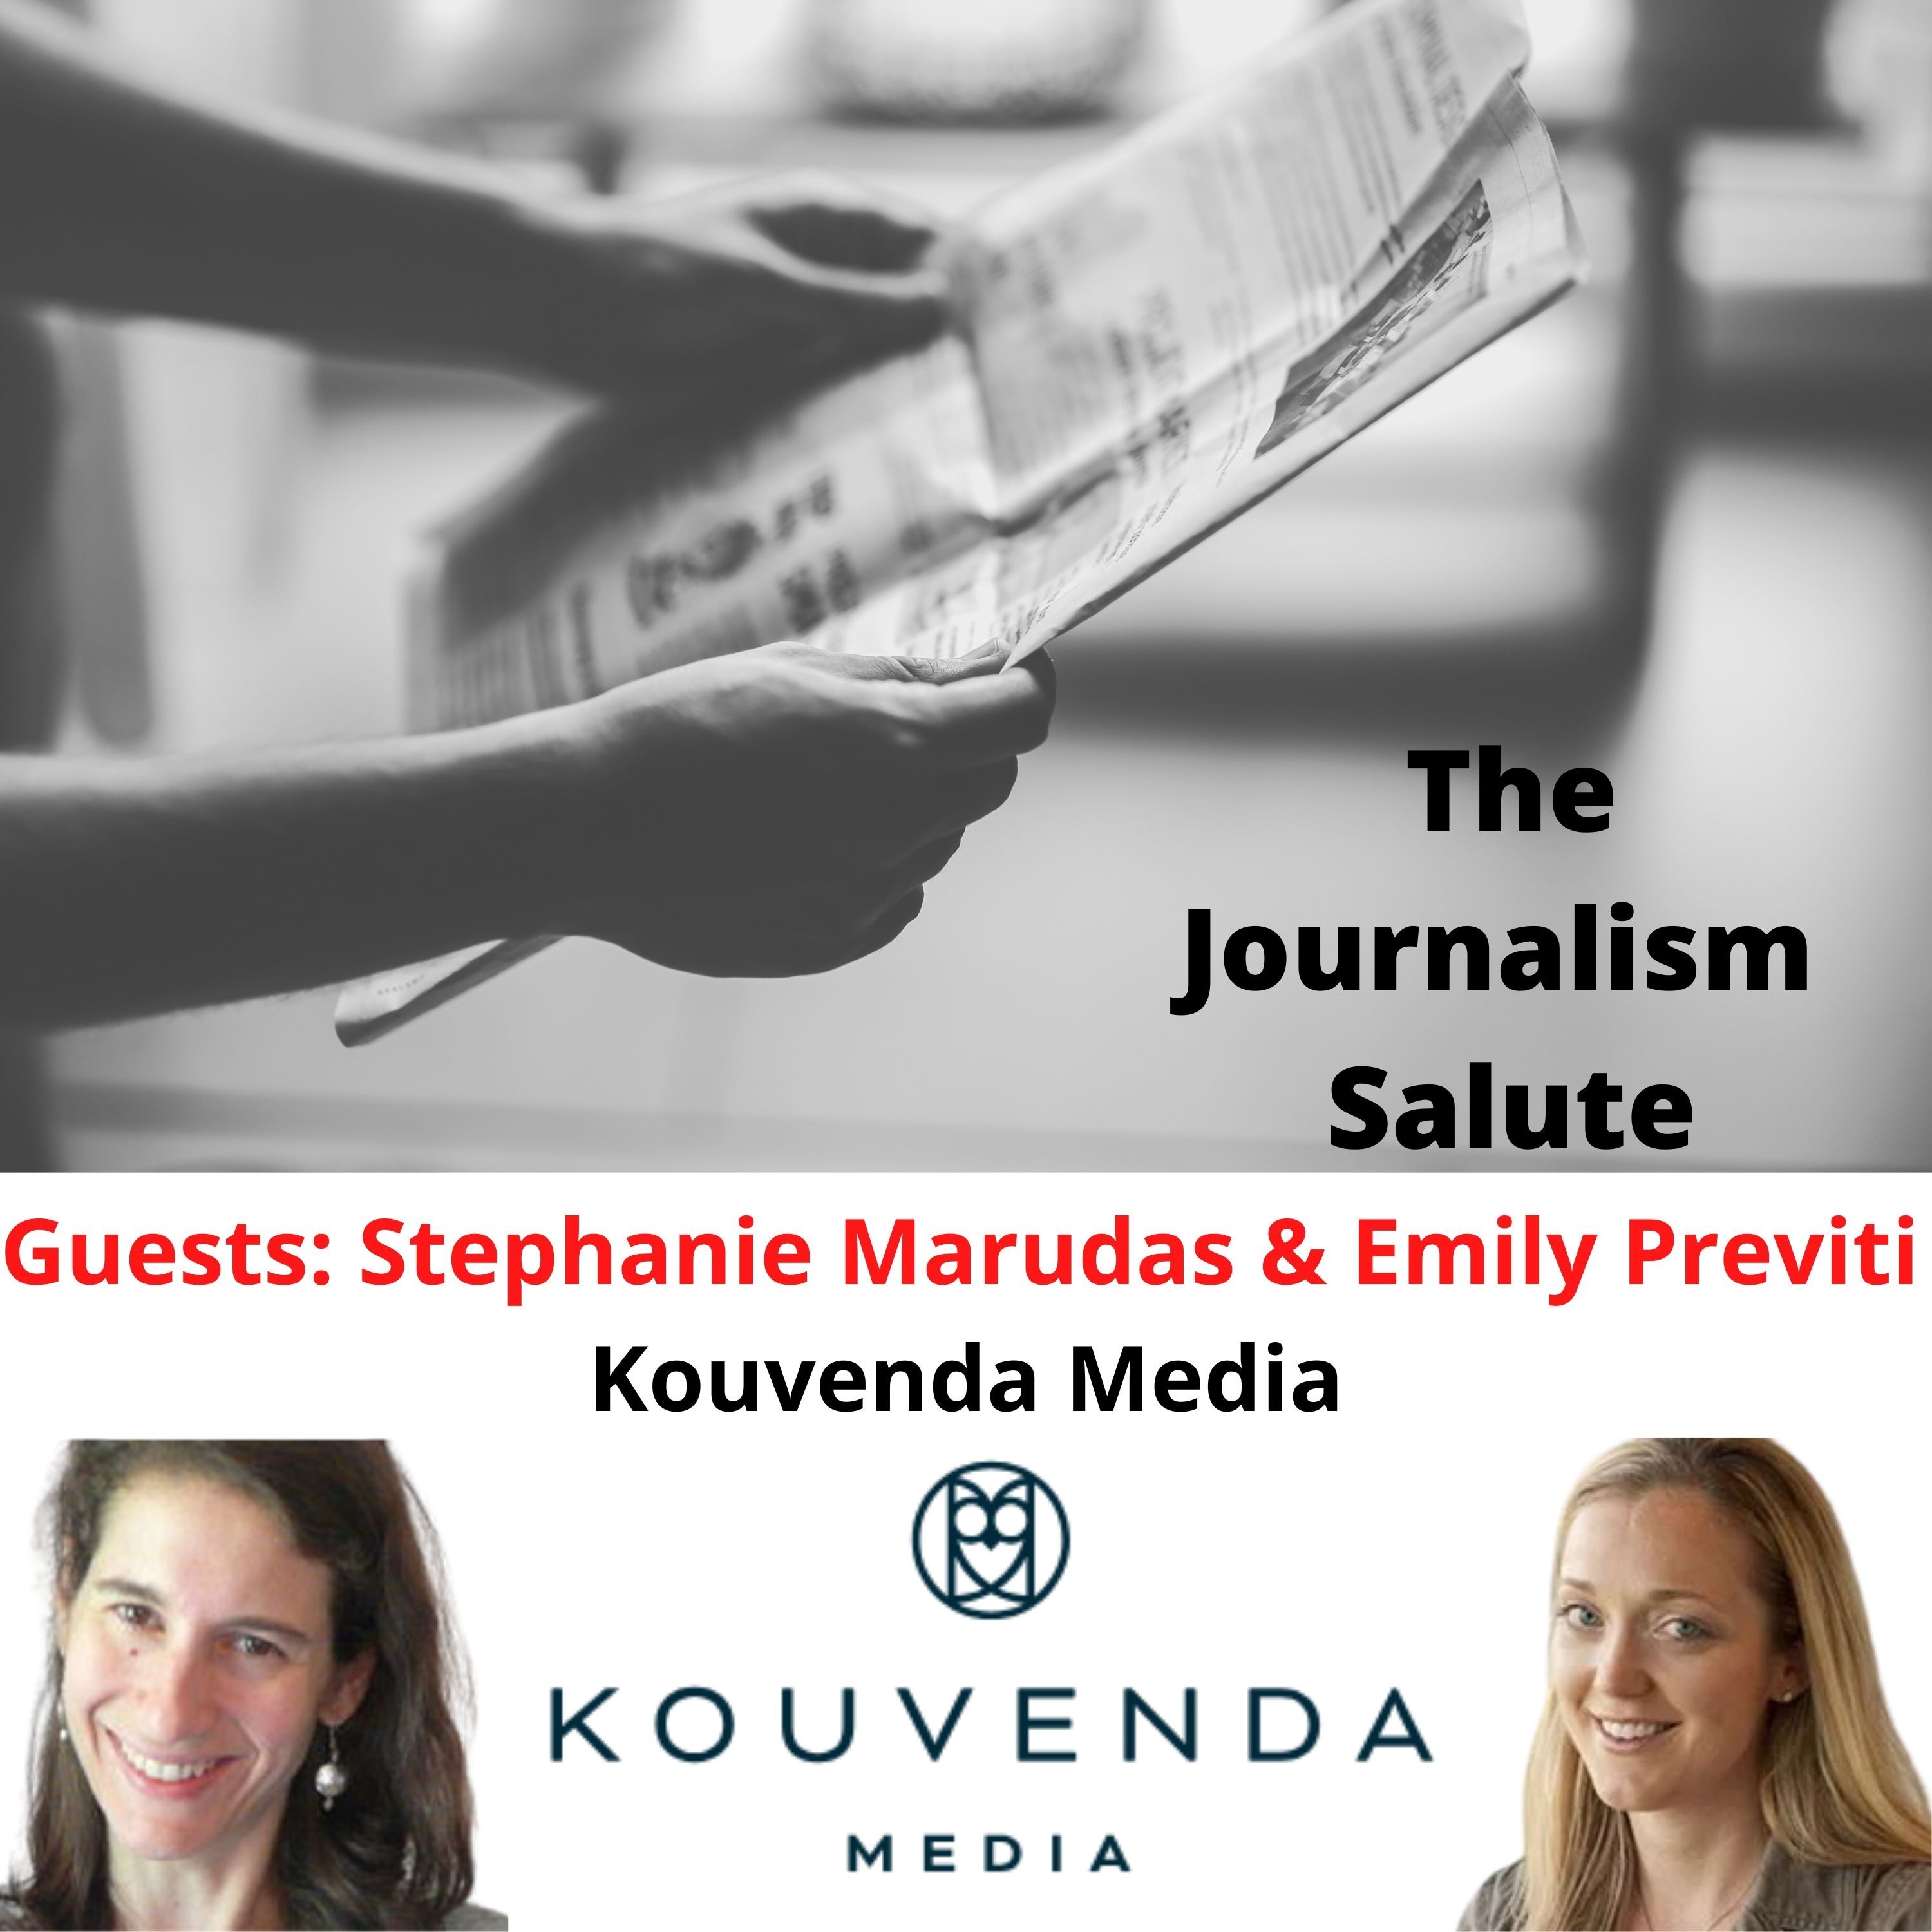 Stephanie Marudas and Emily Previti, Kouvenda Media